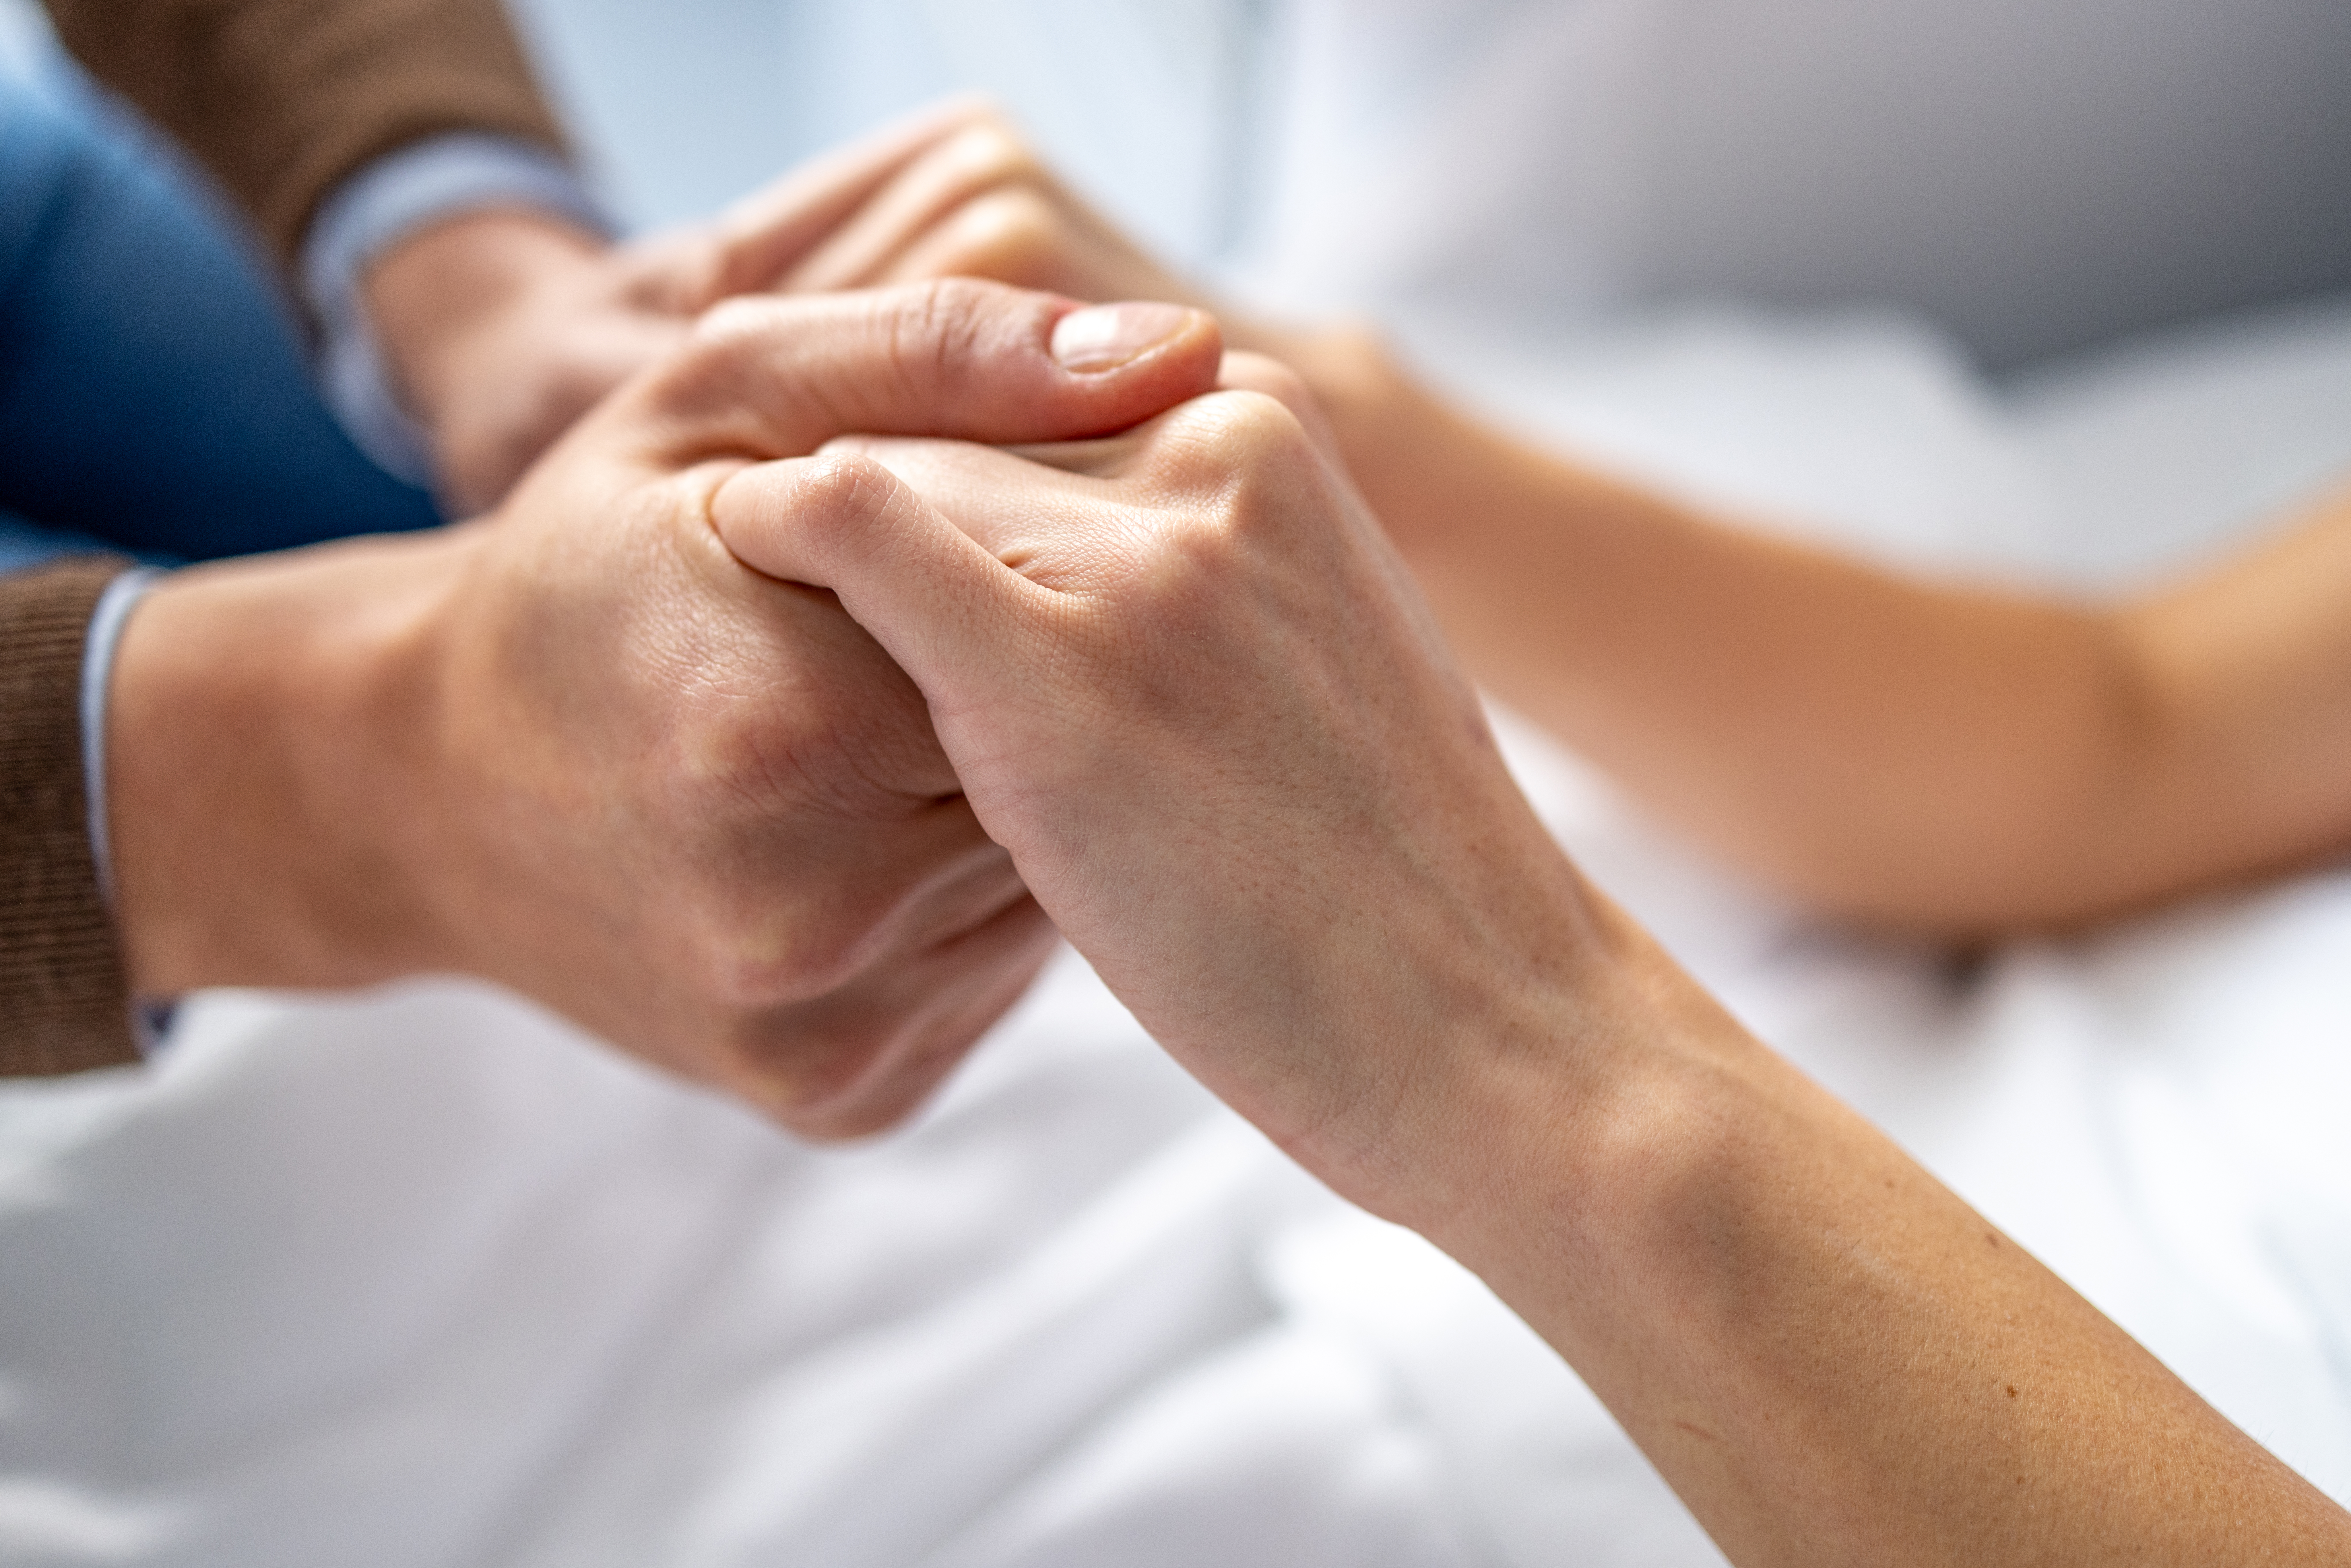 Homme tenant la main d'une femme dans un lit d'hôpital. | Source : Getty Images